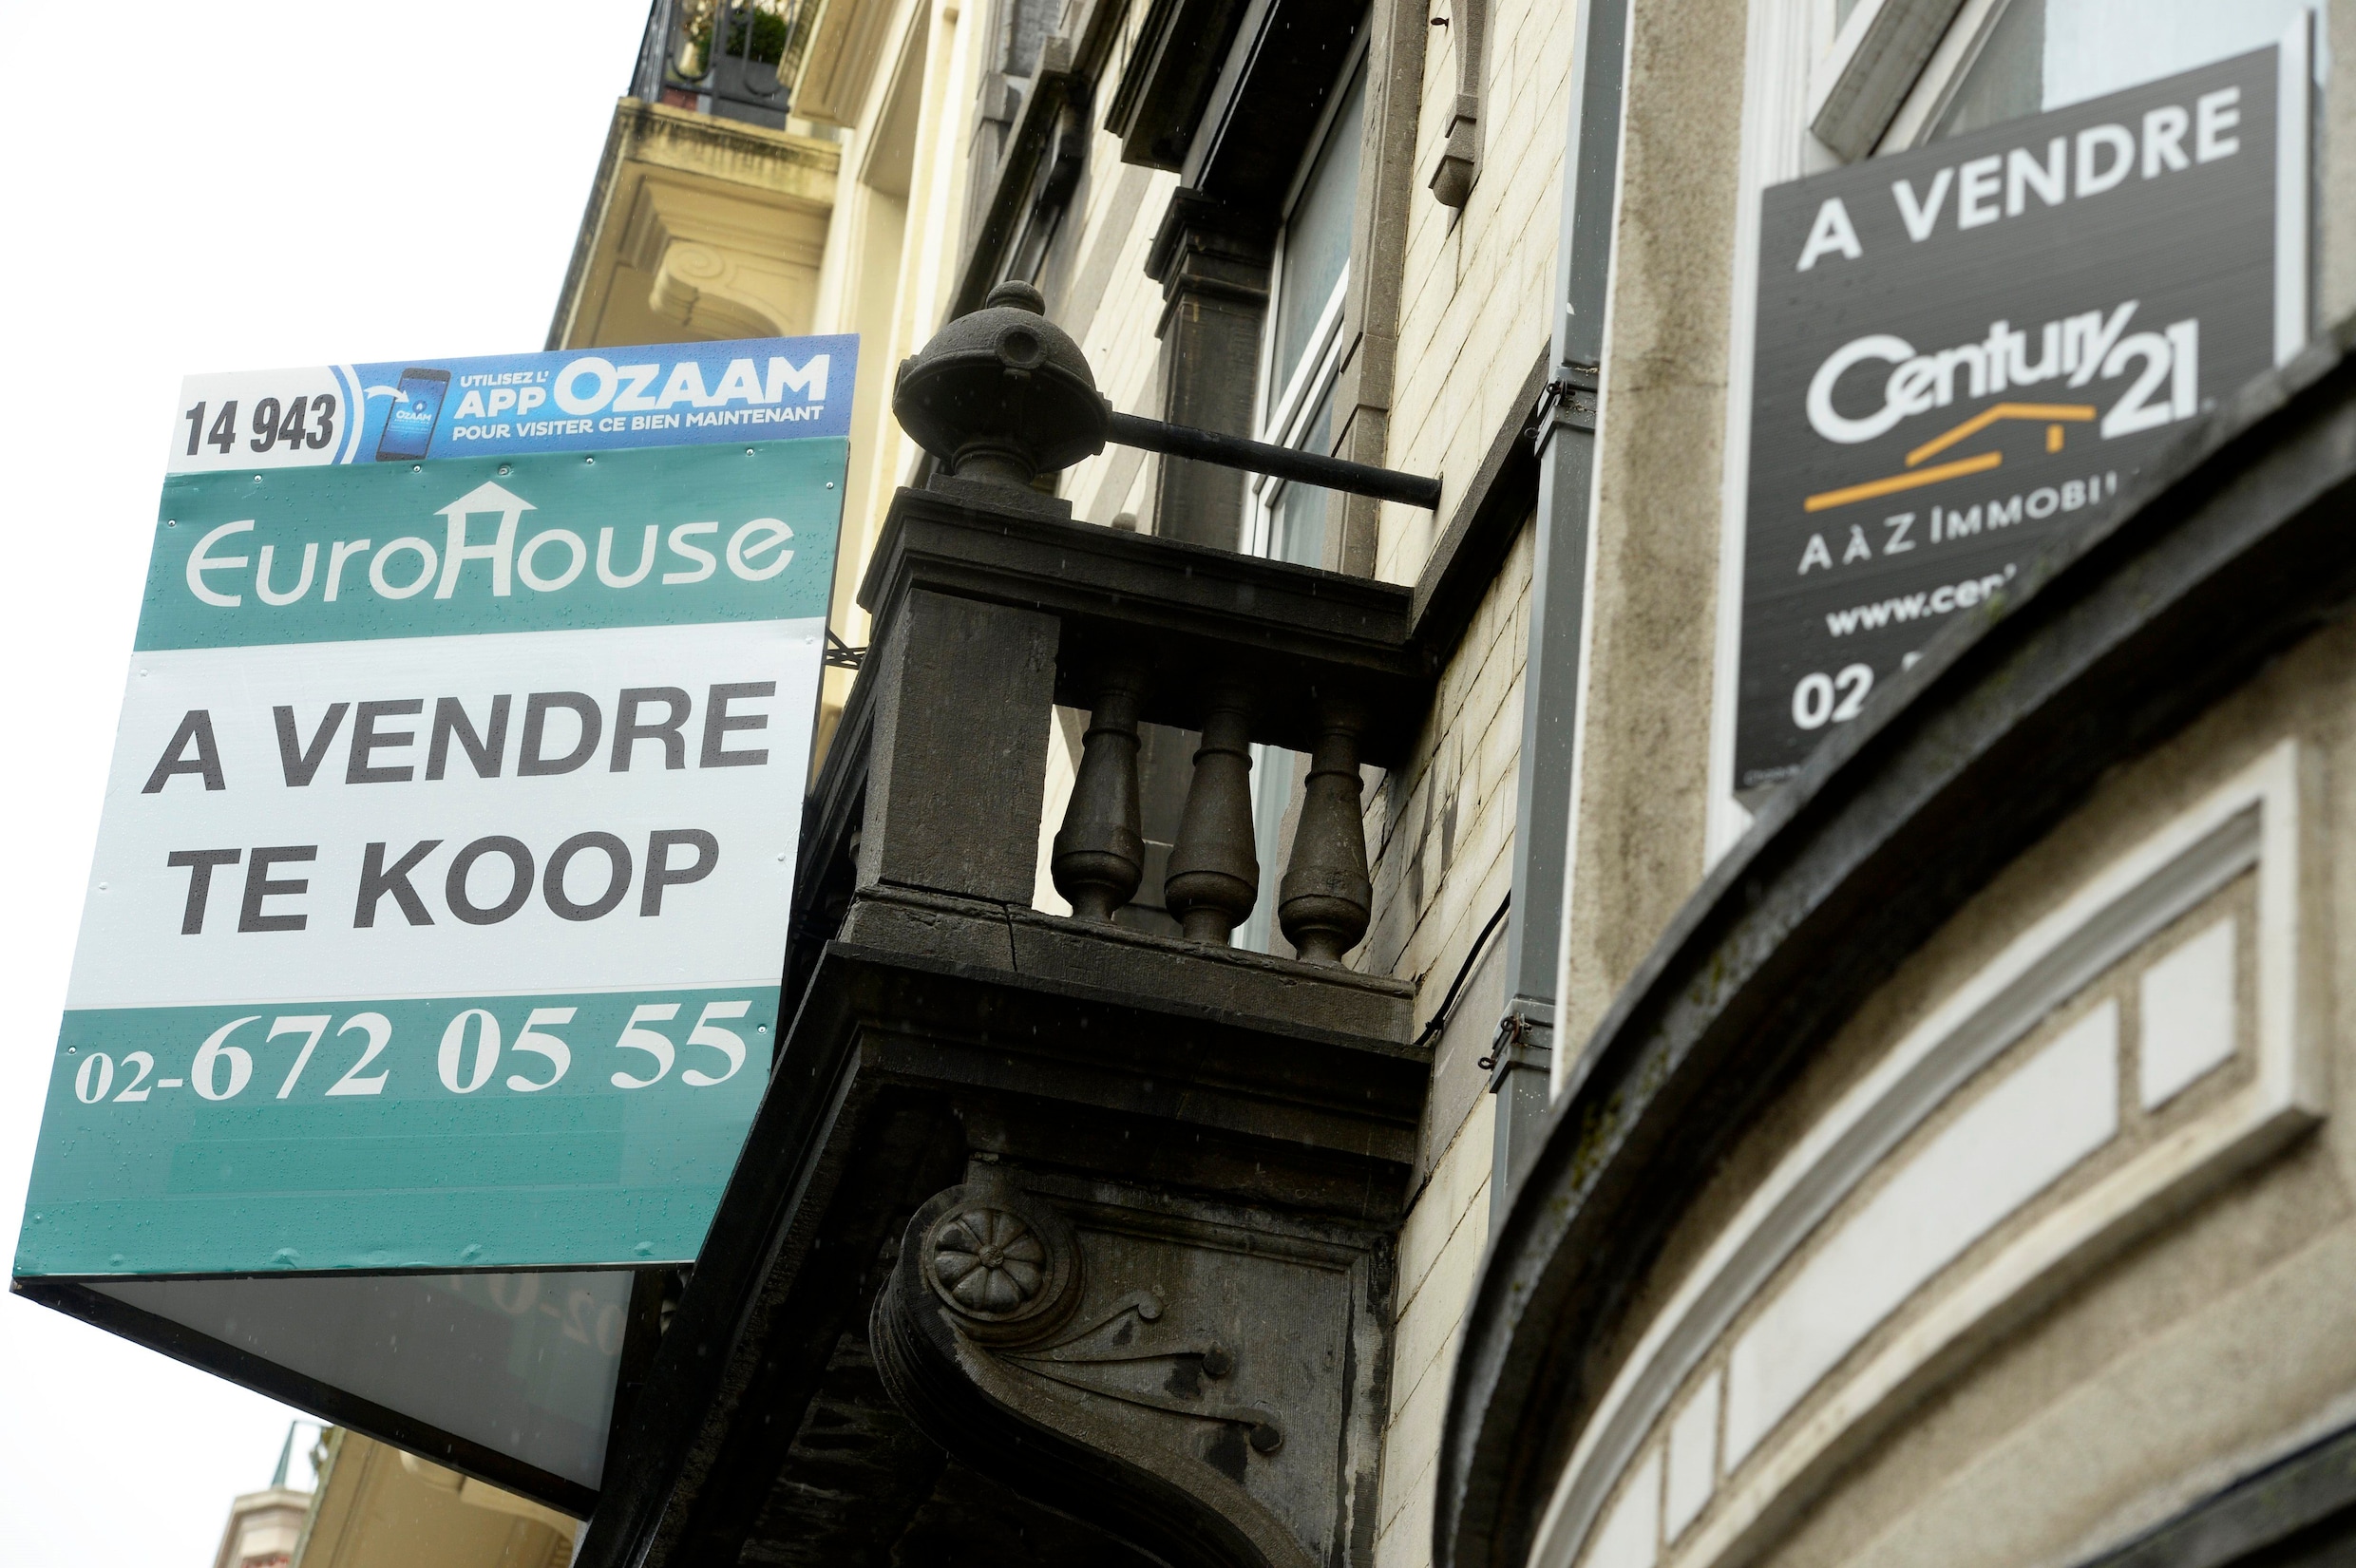 Huis gemiddeld 5.000 euro goedkoper dan half jaar geleden